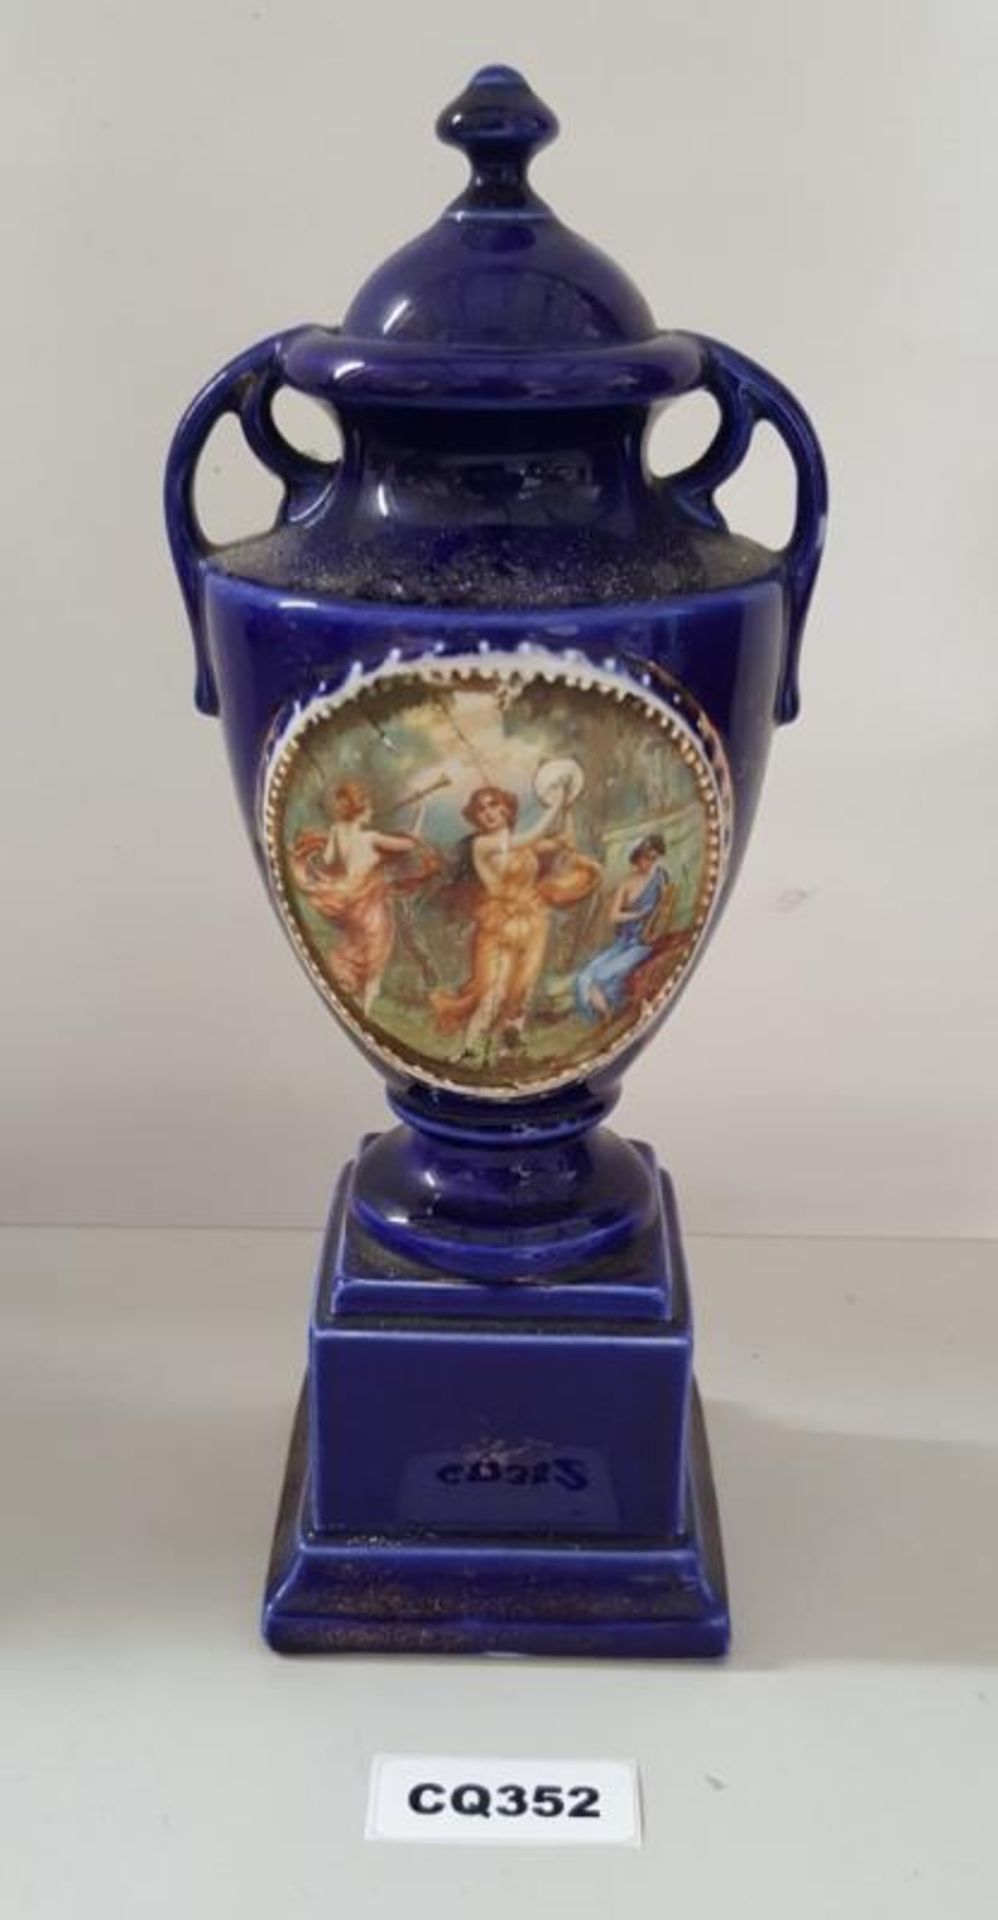 1 x Empire Stoke On Trent Blue Porcelain Trophy Shapped Ornament - Ref CQ352 E - Dimensions:H30/L11c